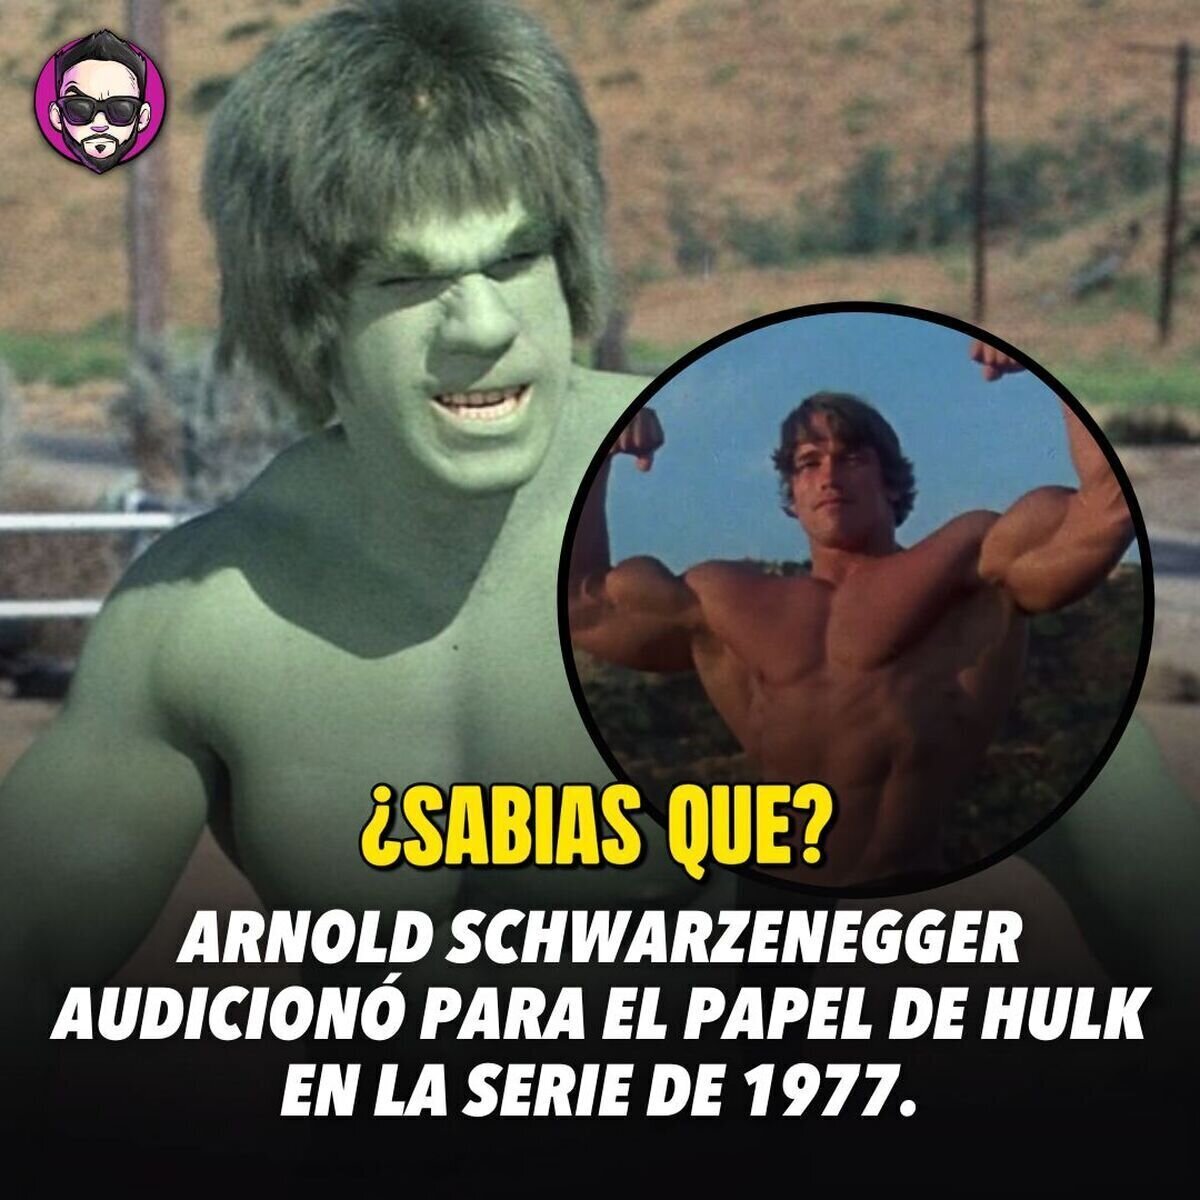 ¿Cuál fue el motivo por el que Arnold Schwarzenegger no obtuvo el papel? No era muy alto